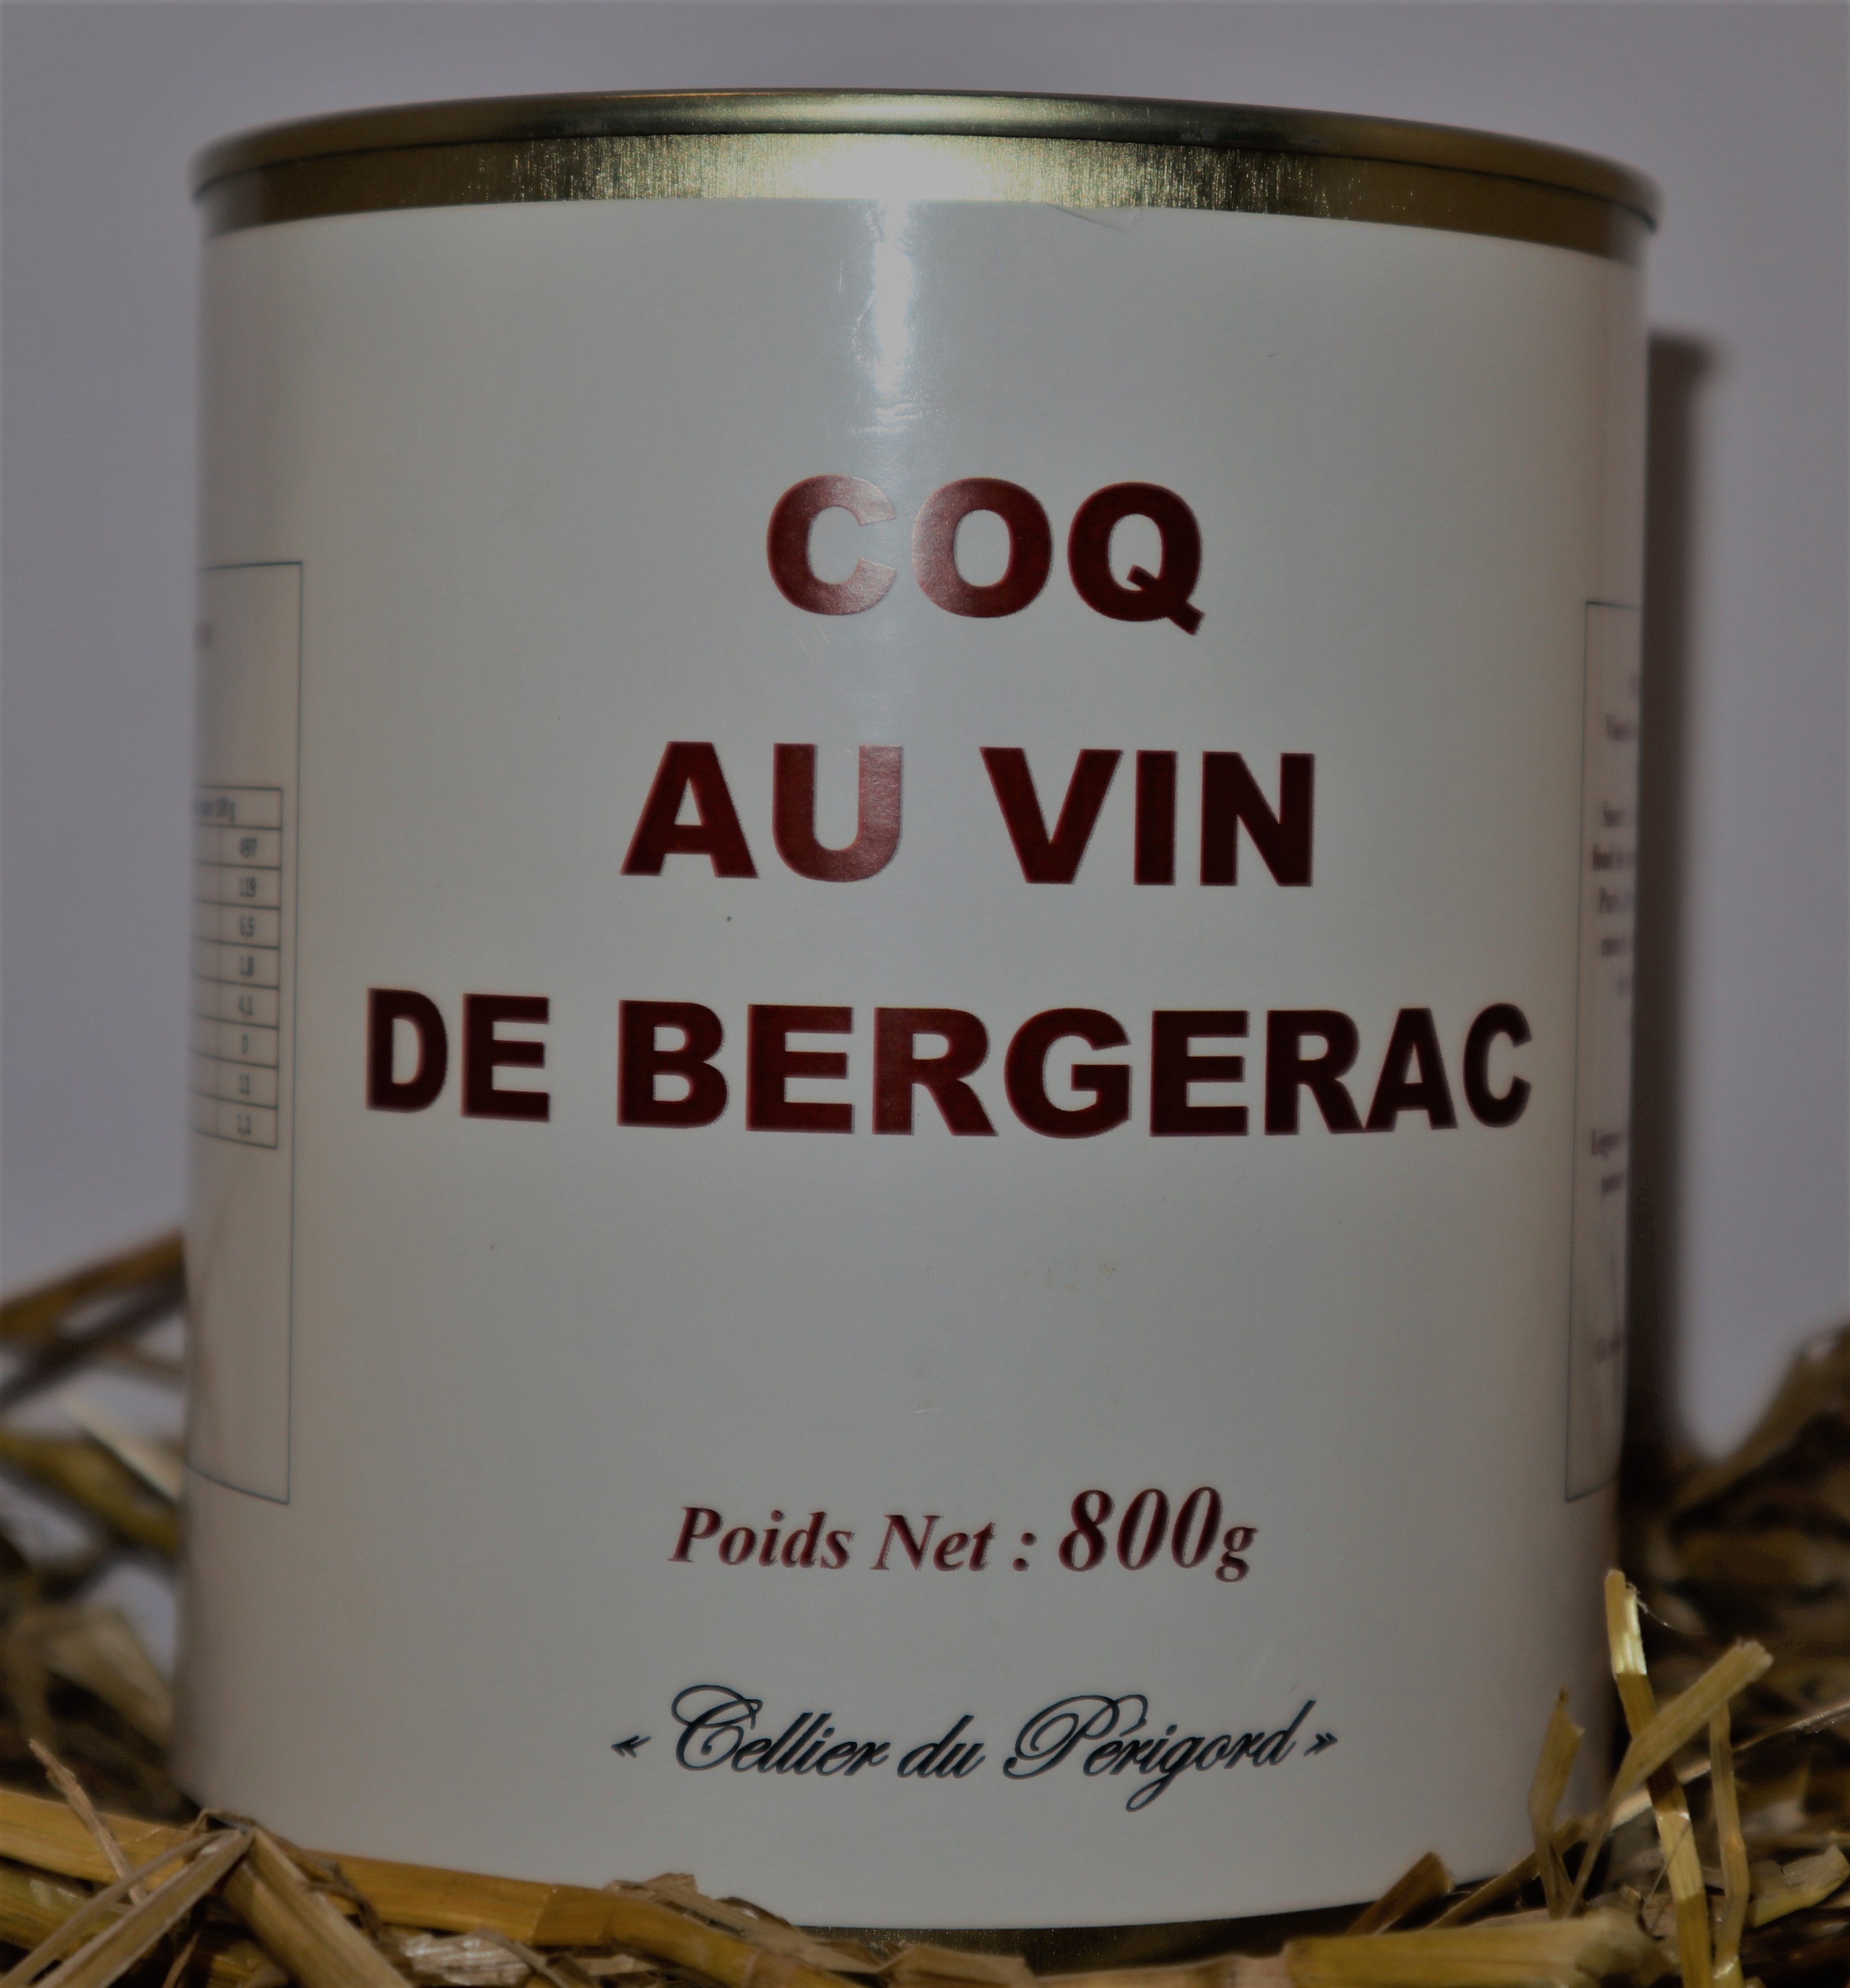 Coq au vin de Bergerac